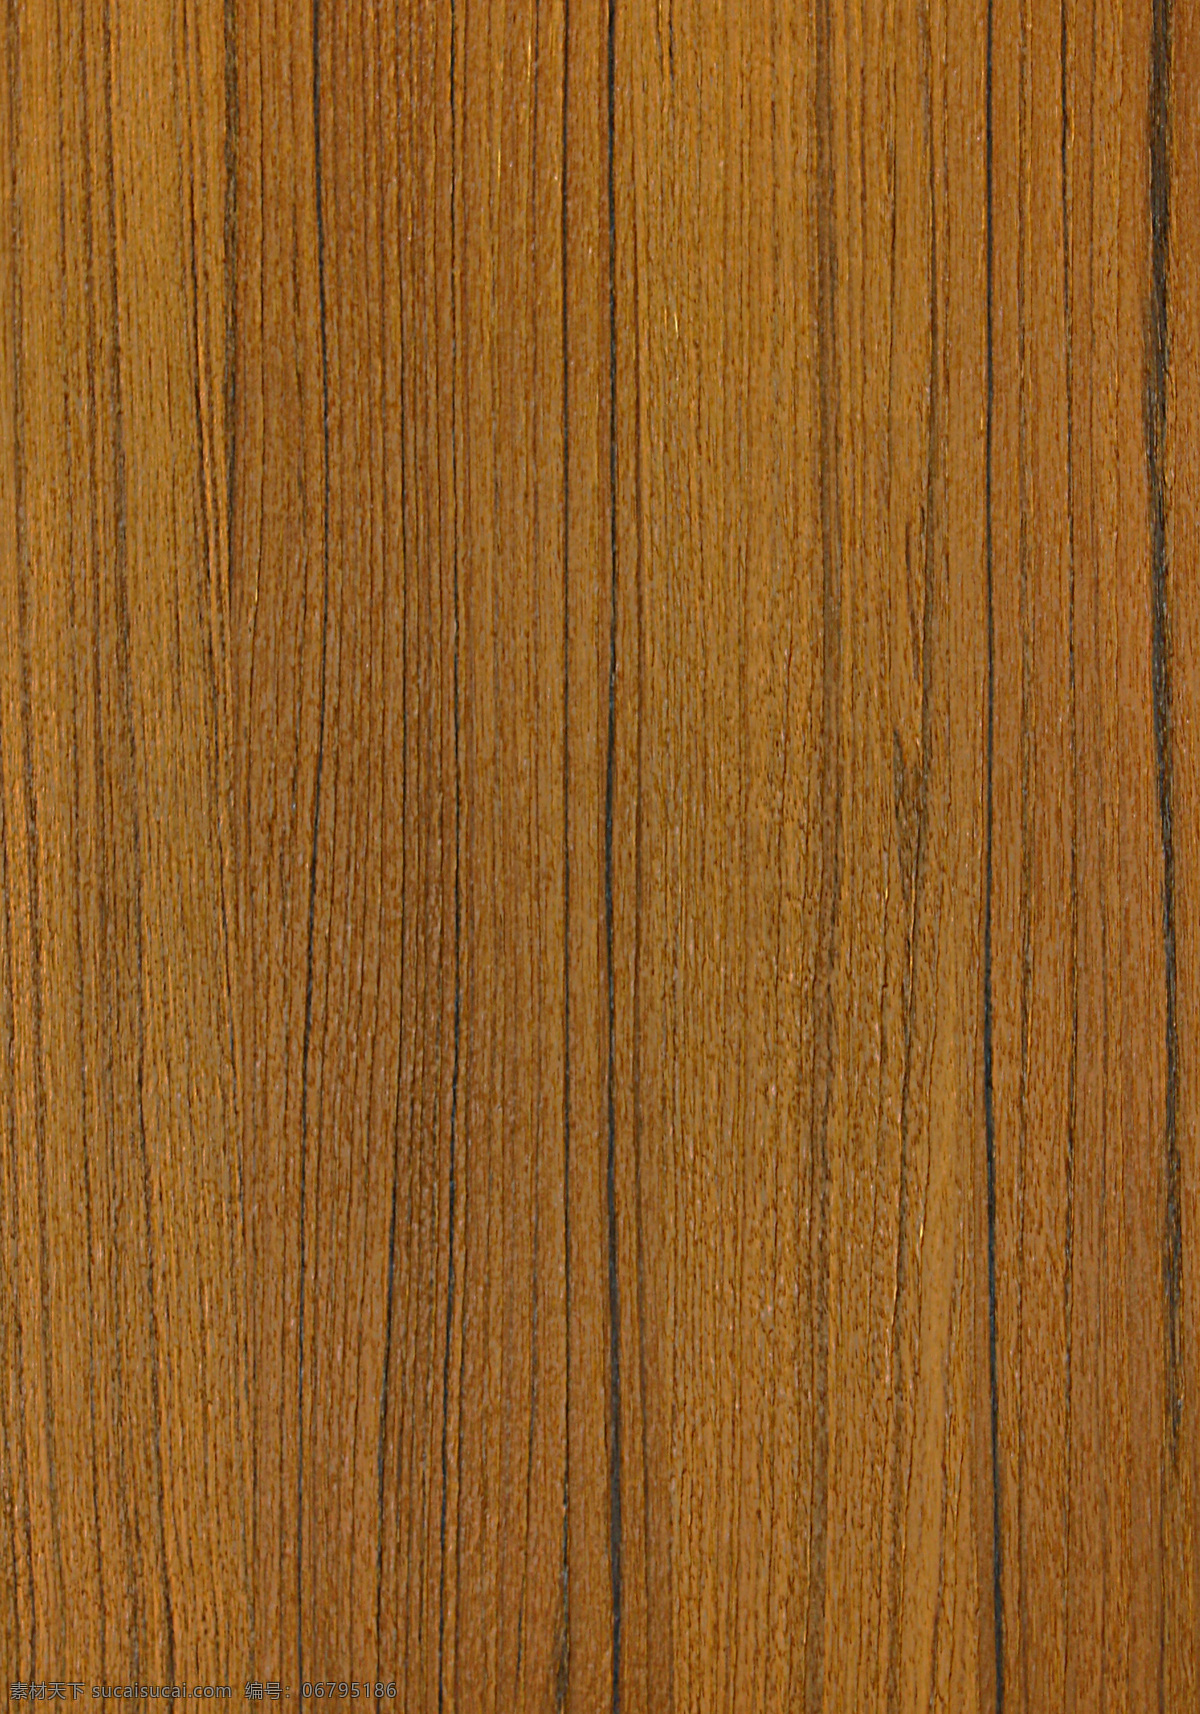 木头 木地板 木纹 贴图 木饰图片 木饰面 背景 木 环境设计 室内设计